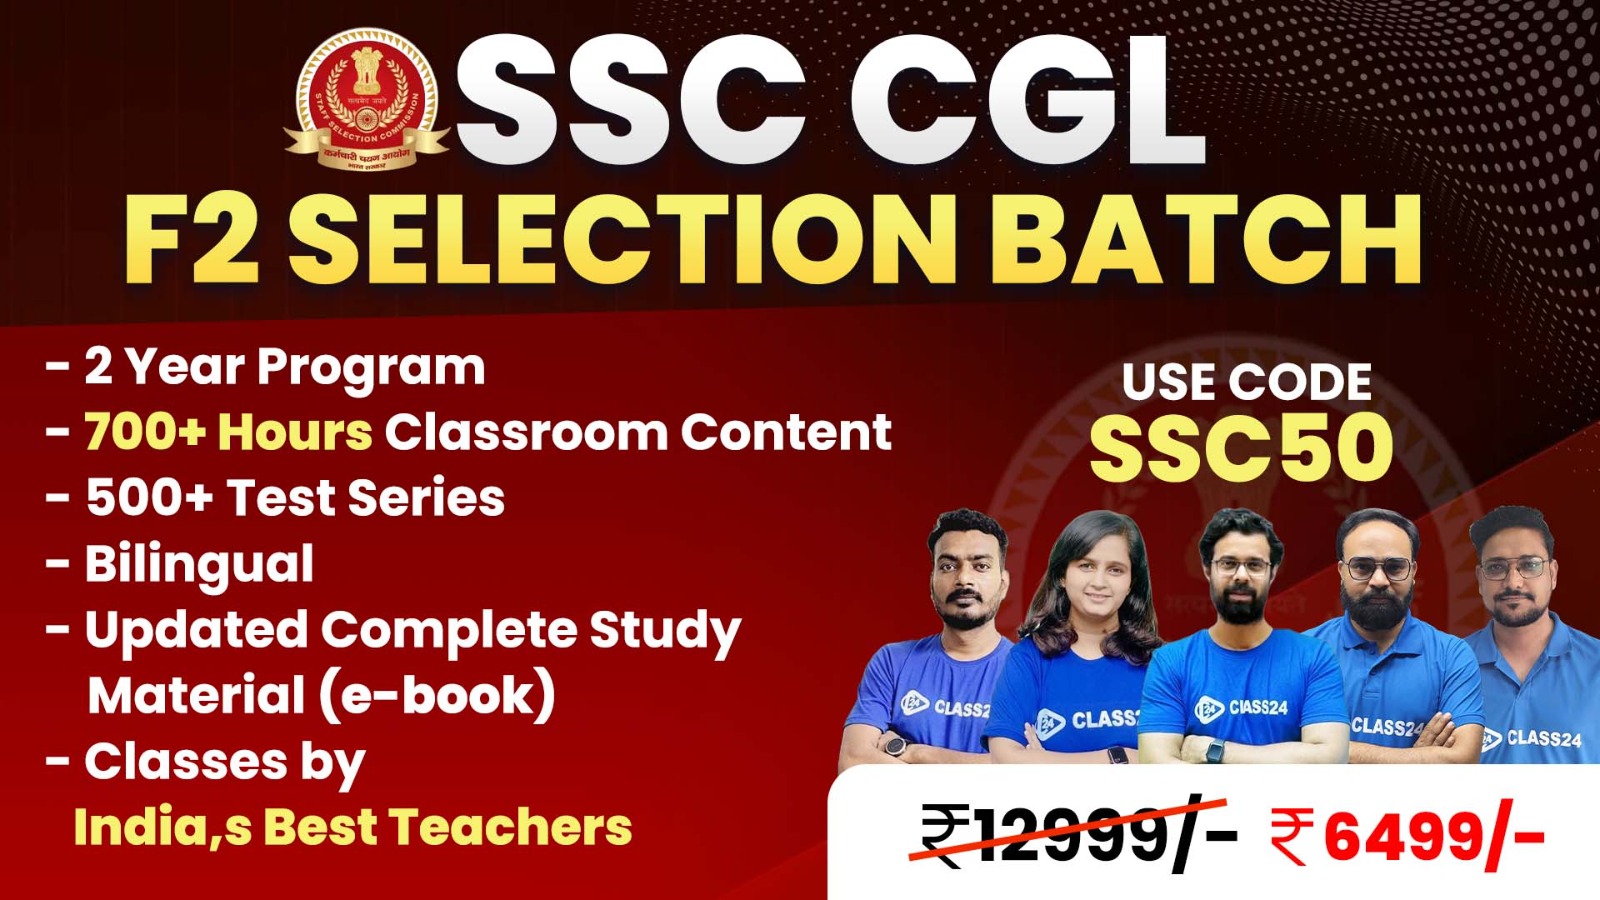 SSC CGL F2 Selection Batch